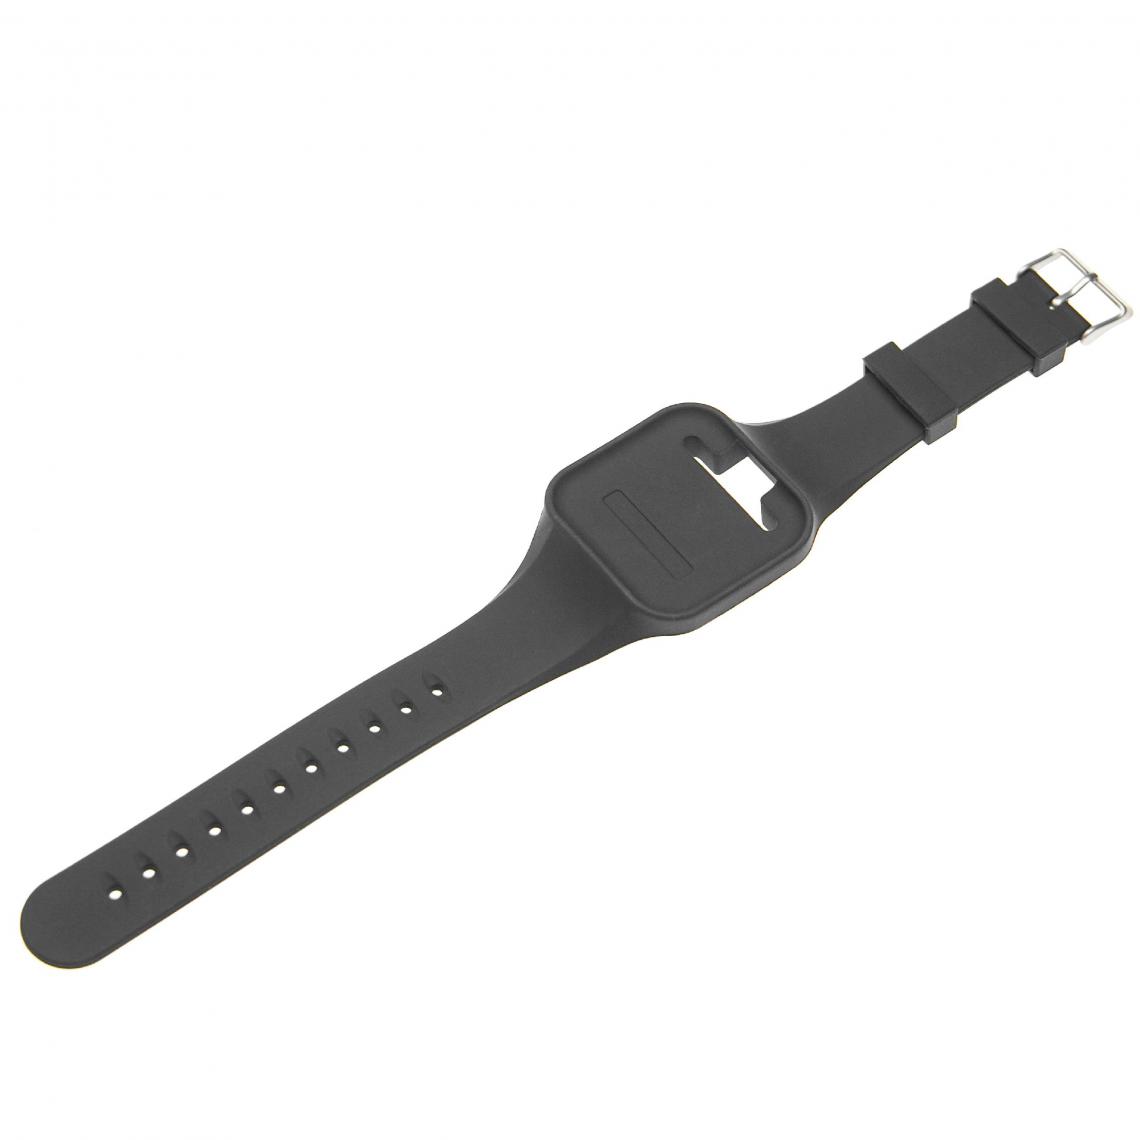 Vhbw - vhbw bracelet compatible avec Golf Buddy Voive, Voive 2 GPS montre connectée - 26,9 cm silicone noir - Accessoires montres connectées